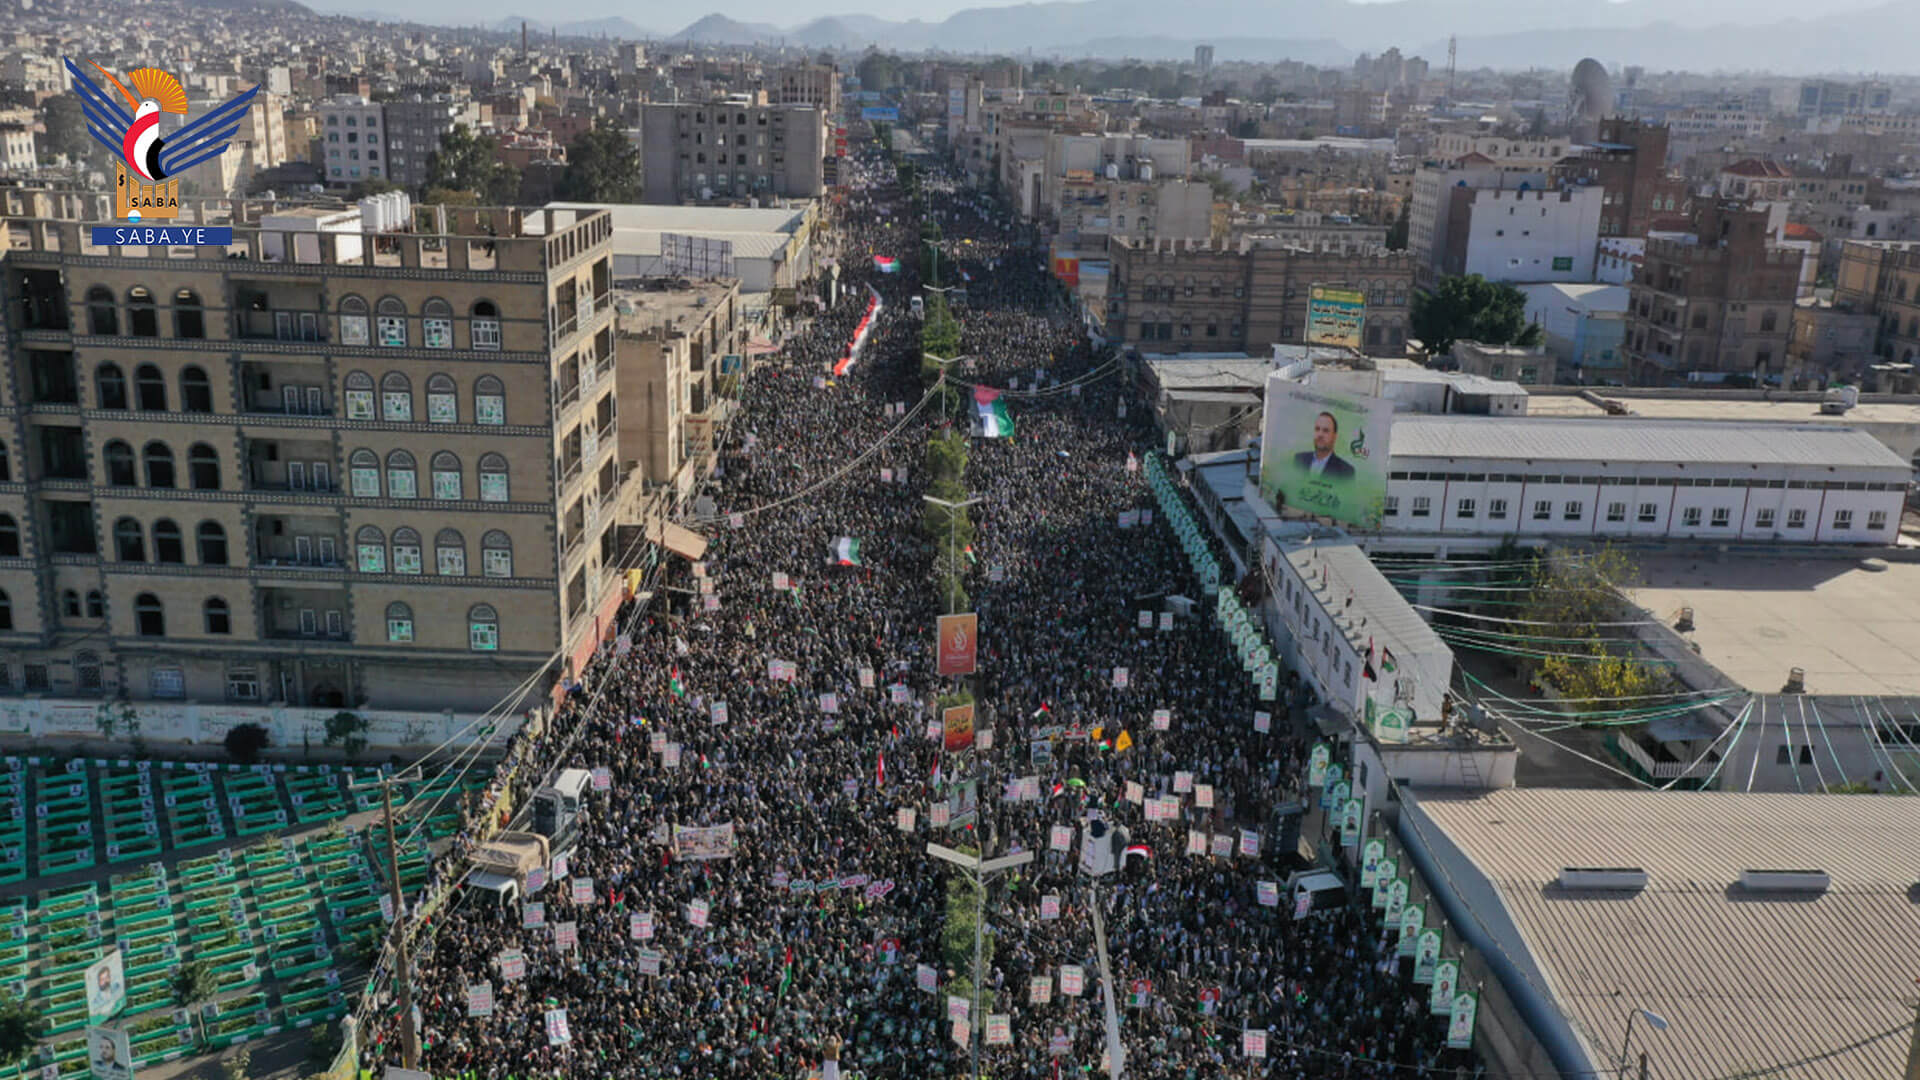 مسيرة كبرى في العاصمة صنعاء تحت شعار "مع فلسطين جاهزون لكل الخيارات" (سبأ)